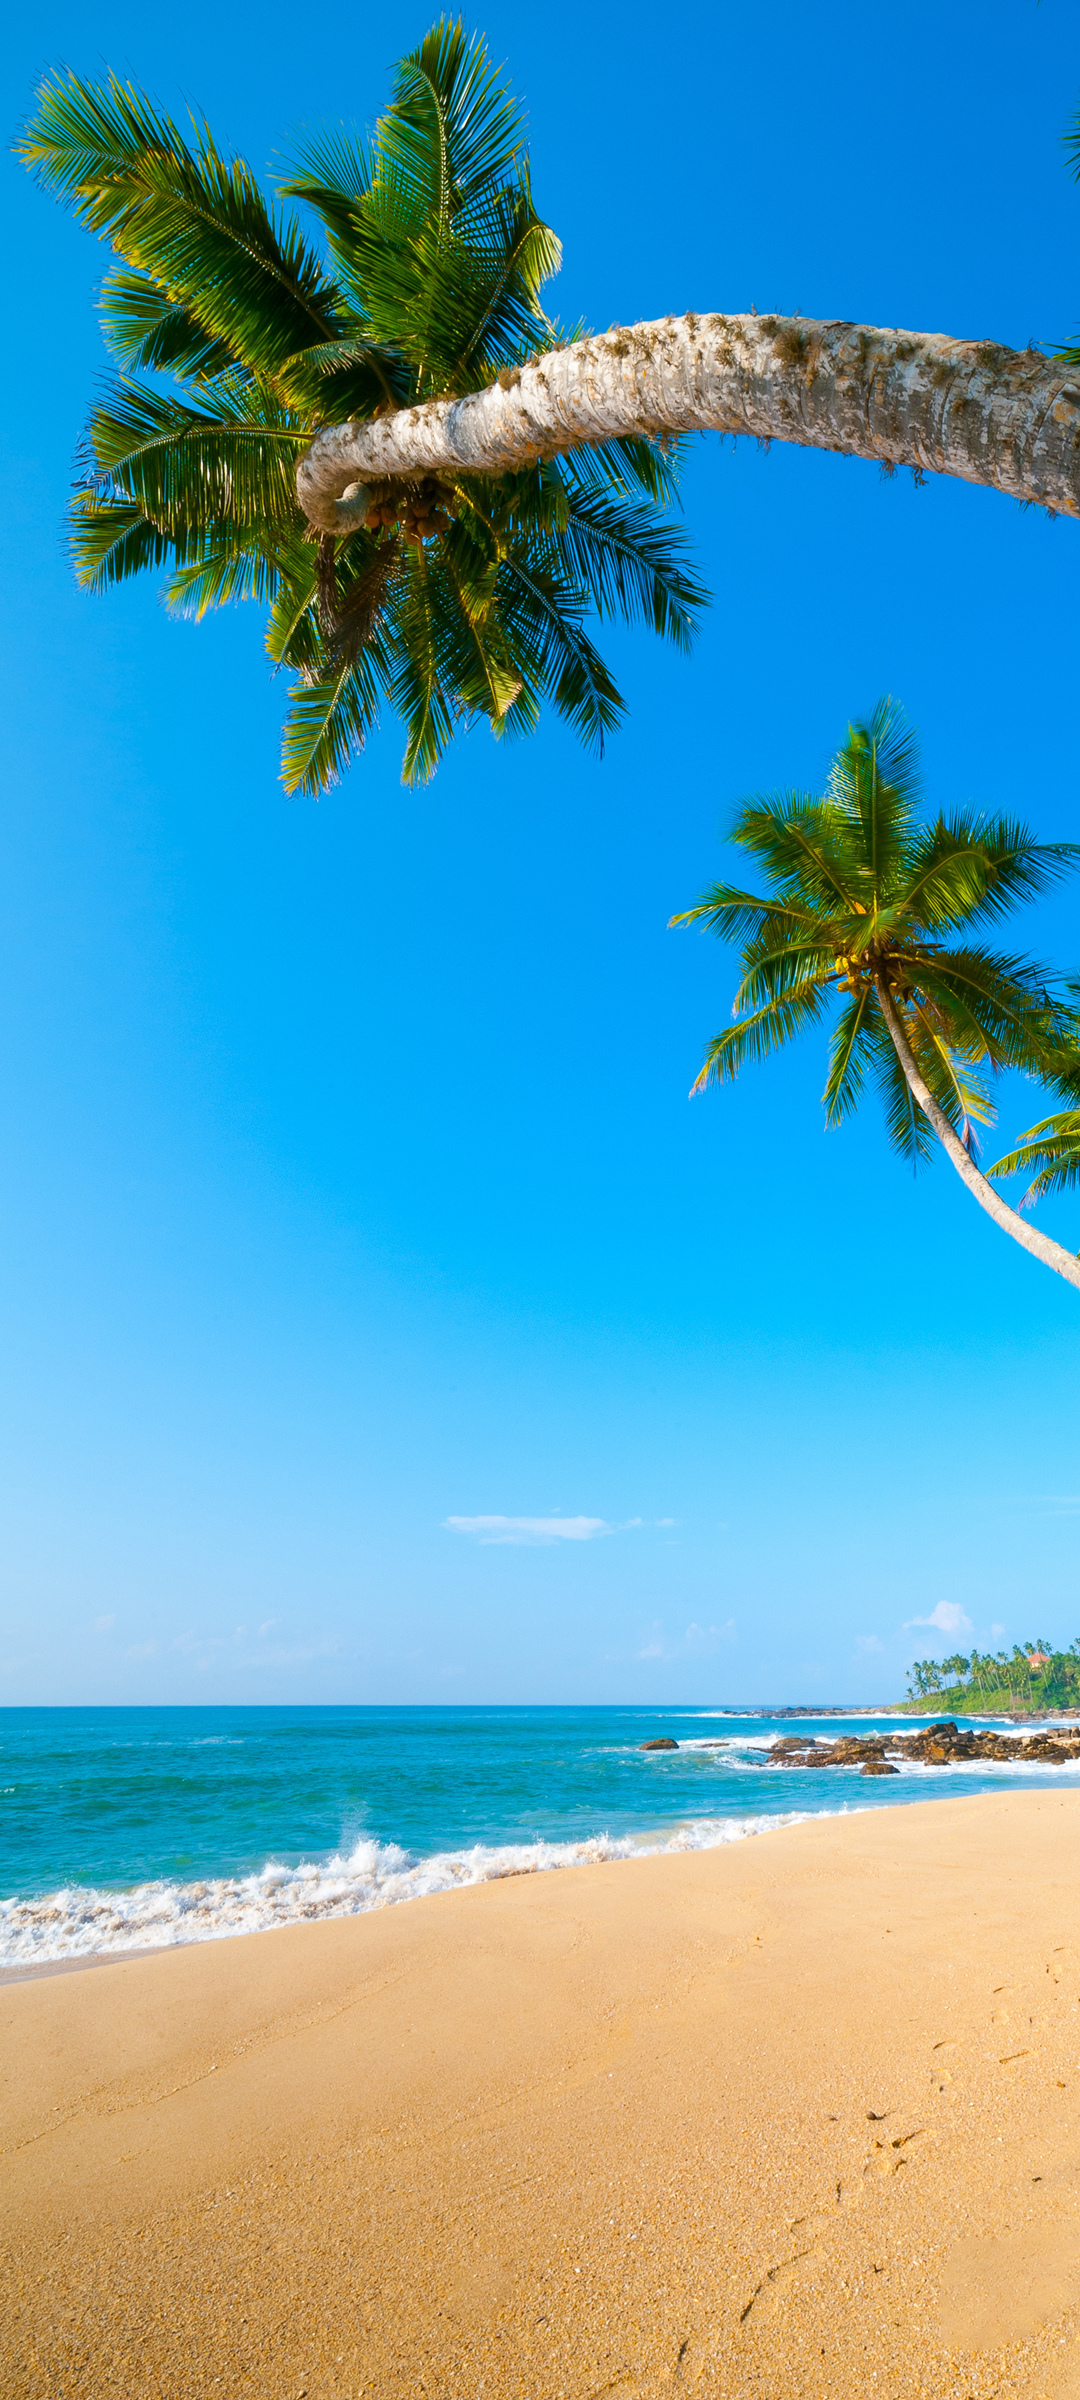 大海 海边 椰树 沙滩风景手机壁纸